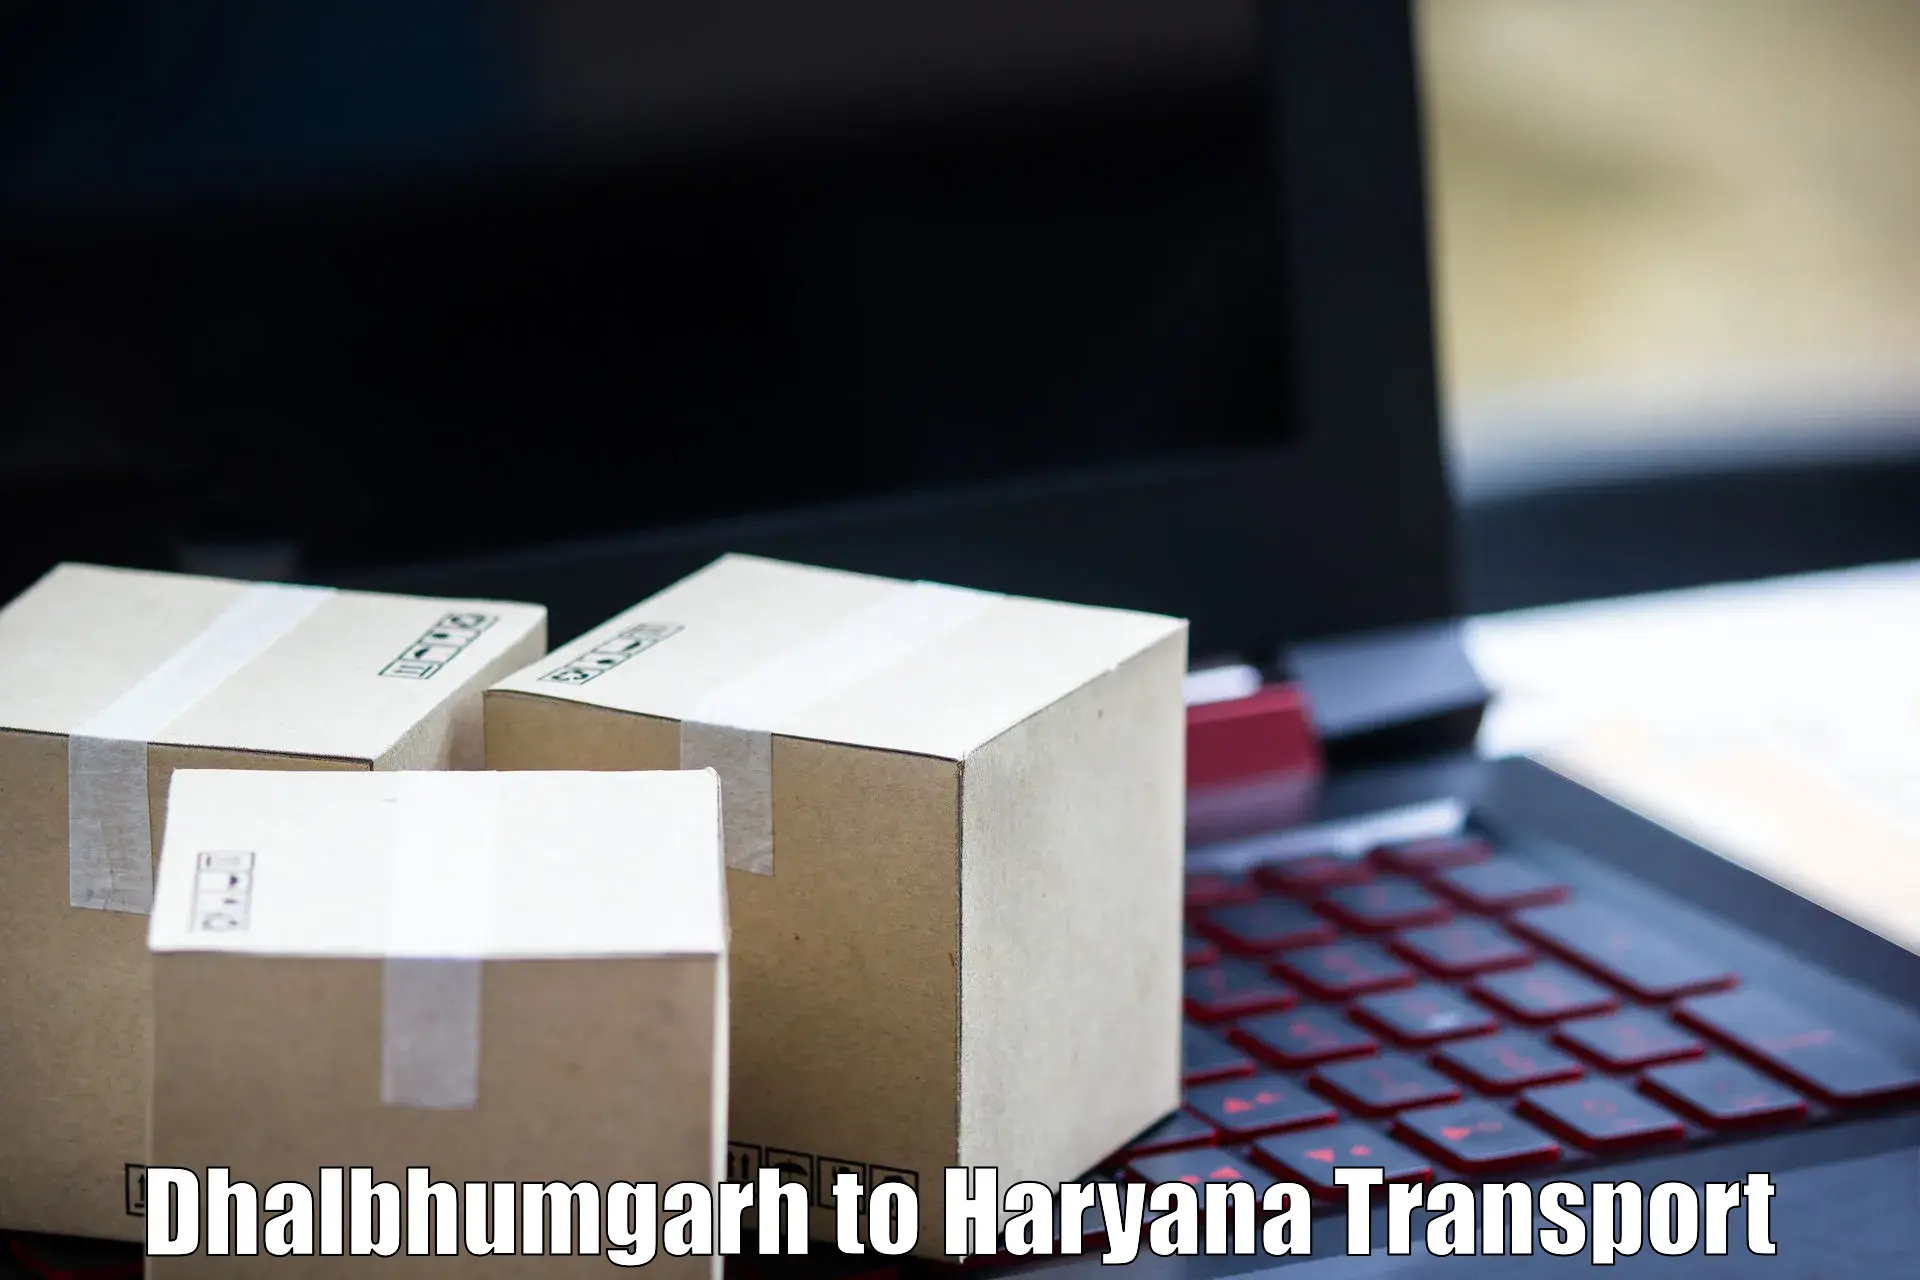 Online transport service Dhalbhumgarh to Kurukshetra